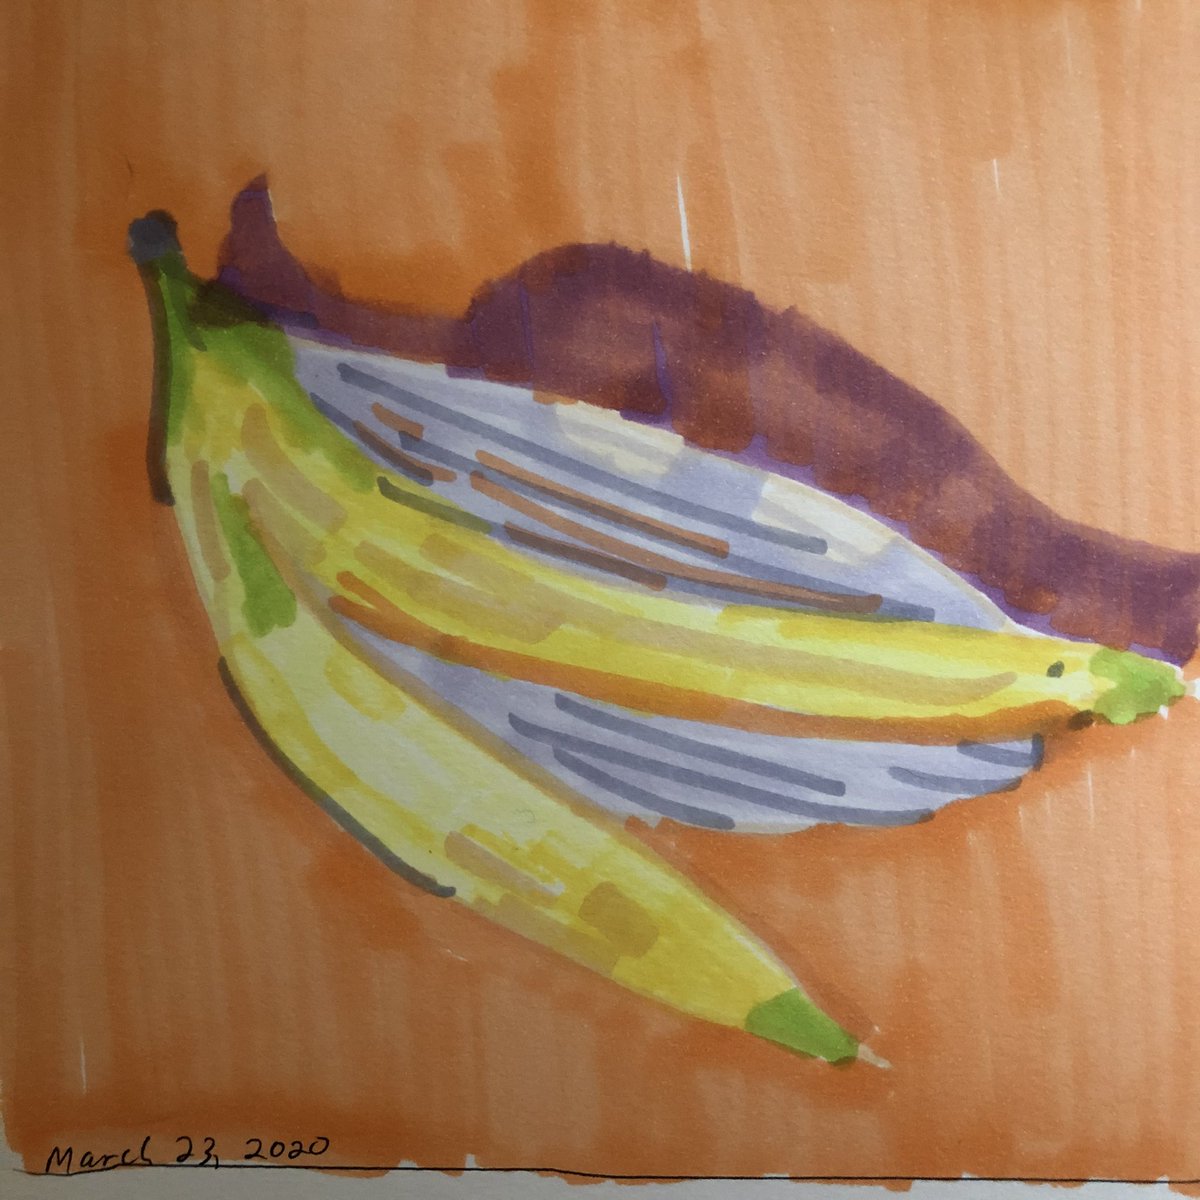 Banana peel.  #art366